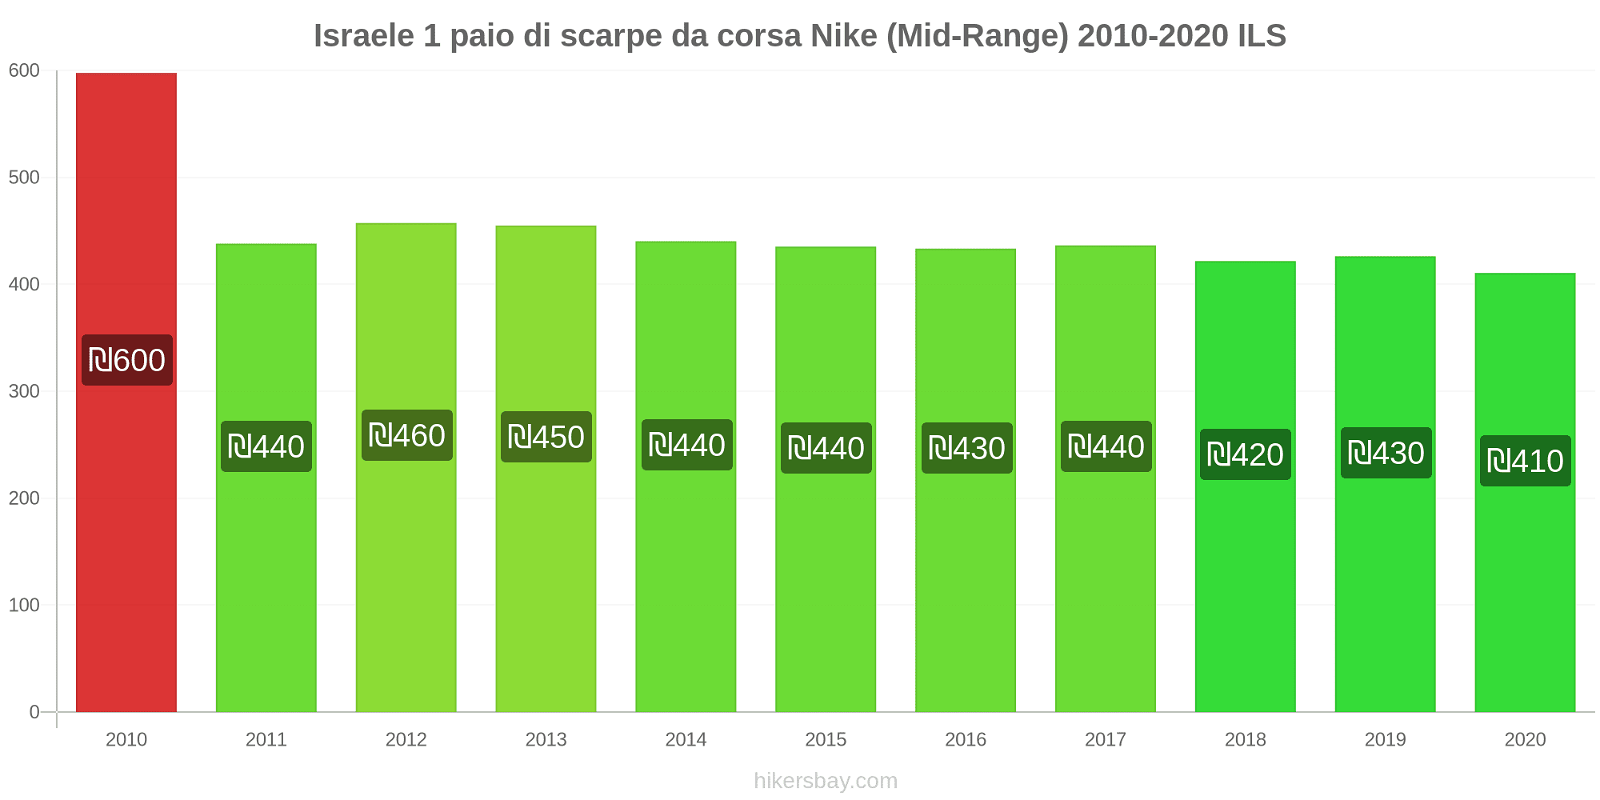 Israele variazioni di prezzo 1 paio di scarpe da corsa Nike (simile) hikersbay.com